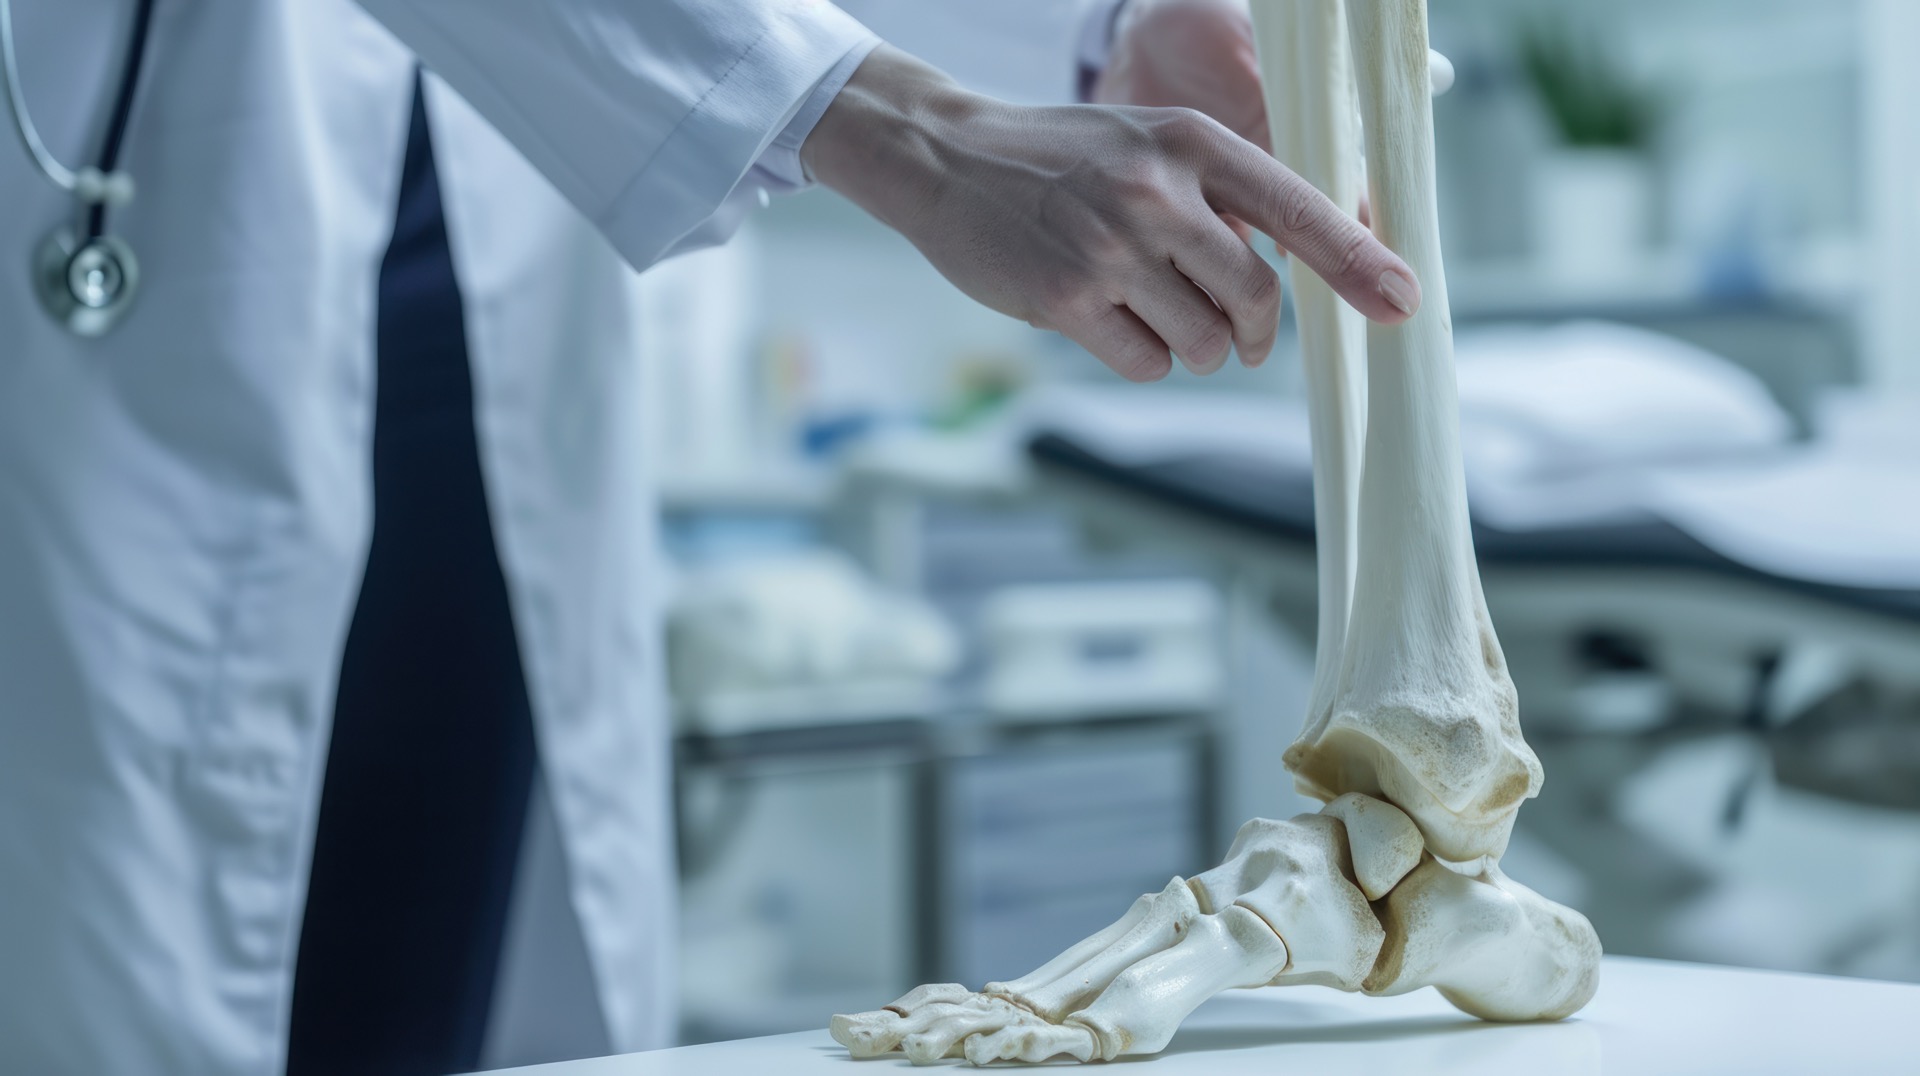 La fibula, également appelée le péroné, est un os long et mince situé dans la partie latérale de la jambe, parallèle au tibia. © Attasit, Adobe Stock